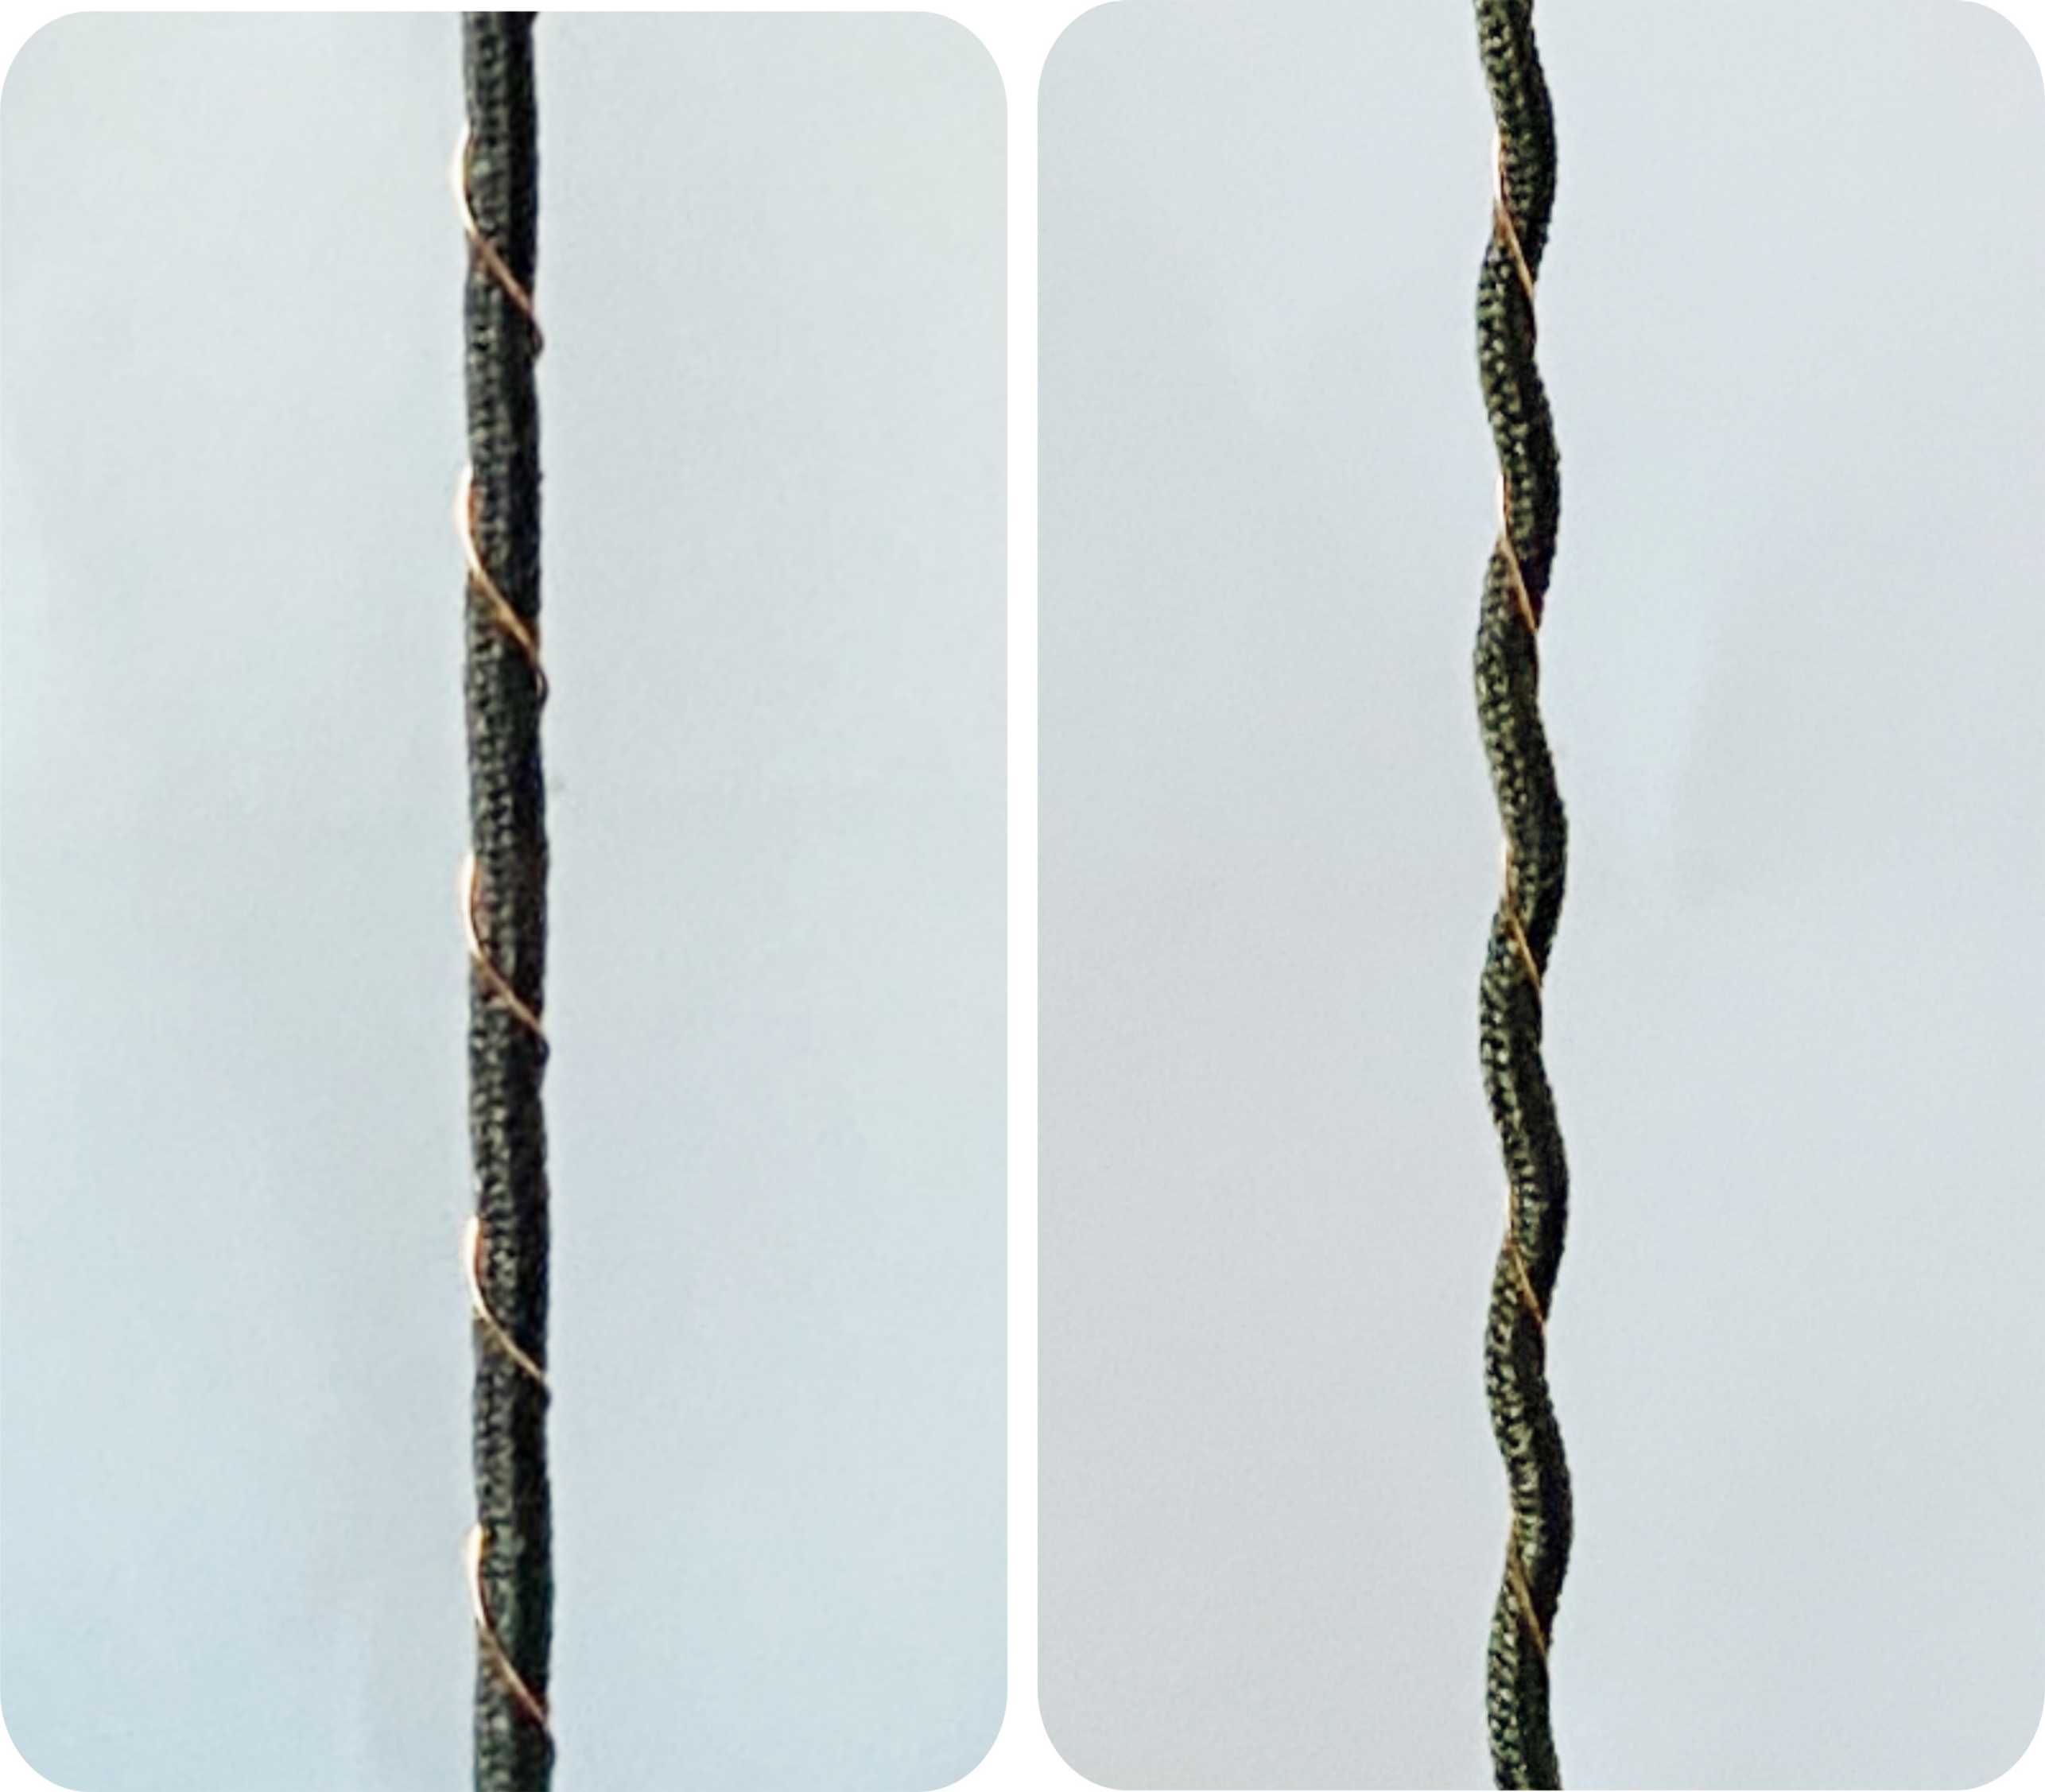 Vergrösserte Ansicht: Links: das Garn mit leitendem Gummi statisch gerade, Rechts: das Garn mit leitendem Gummi unter Zug spiralförmig.